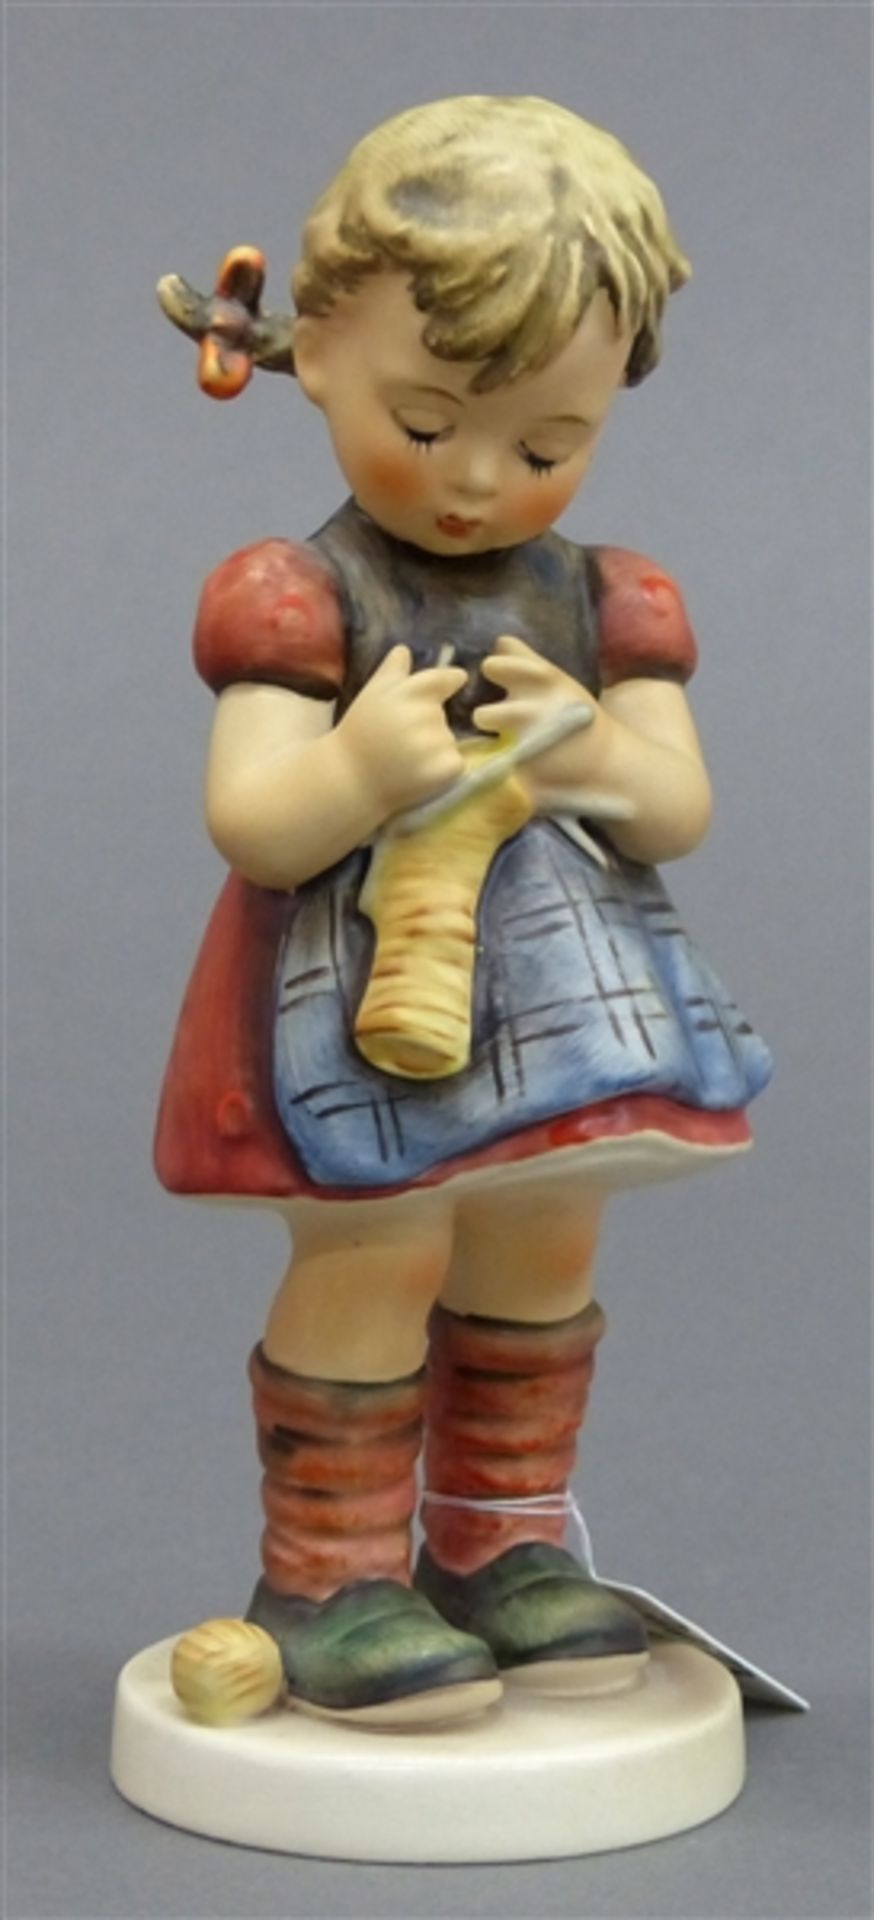 HummelfigurPorzellan, Mädchen beim Stricken, "zwei Rechts - zwei Links", 1963, FM4, h 16 cm,